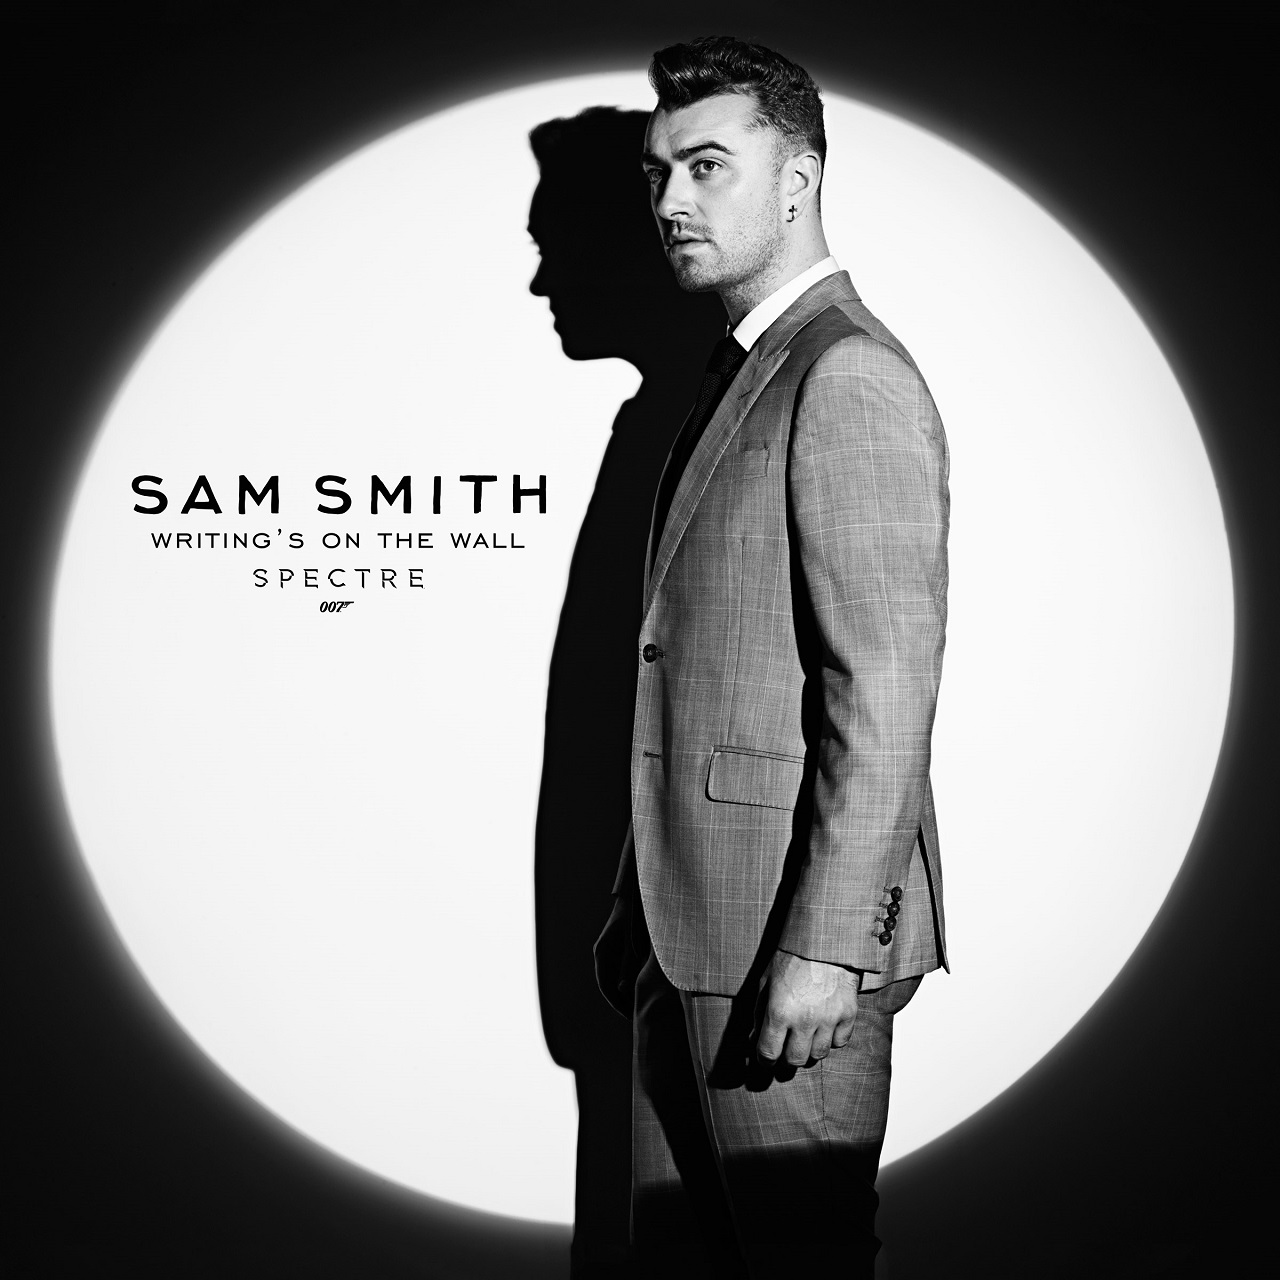 2015年度グラミー賞最多受賞アーティスト、サム・スミスが歌う映画『007 スペクター』主題歌「ライティングズ・オン・ザ・ウォール」MV到着サムネイル画像